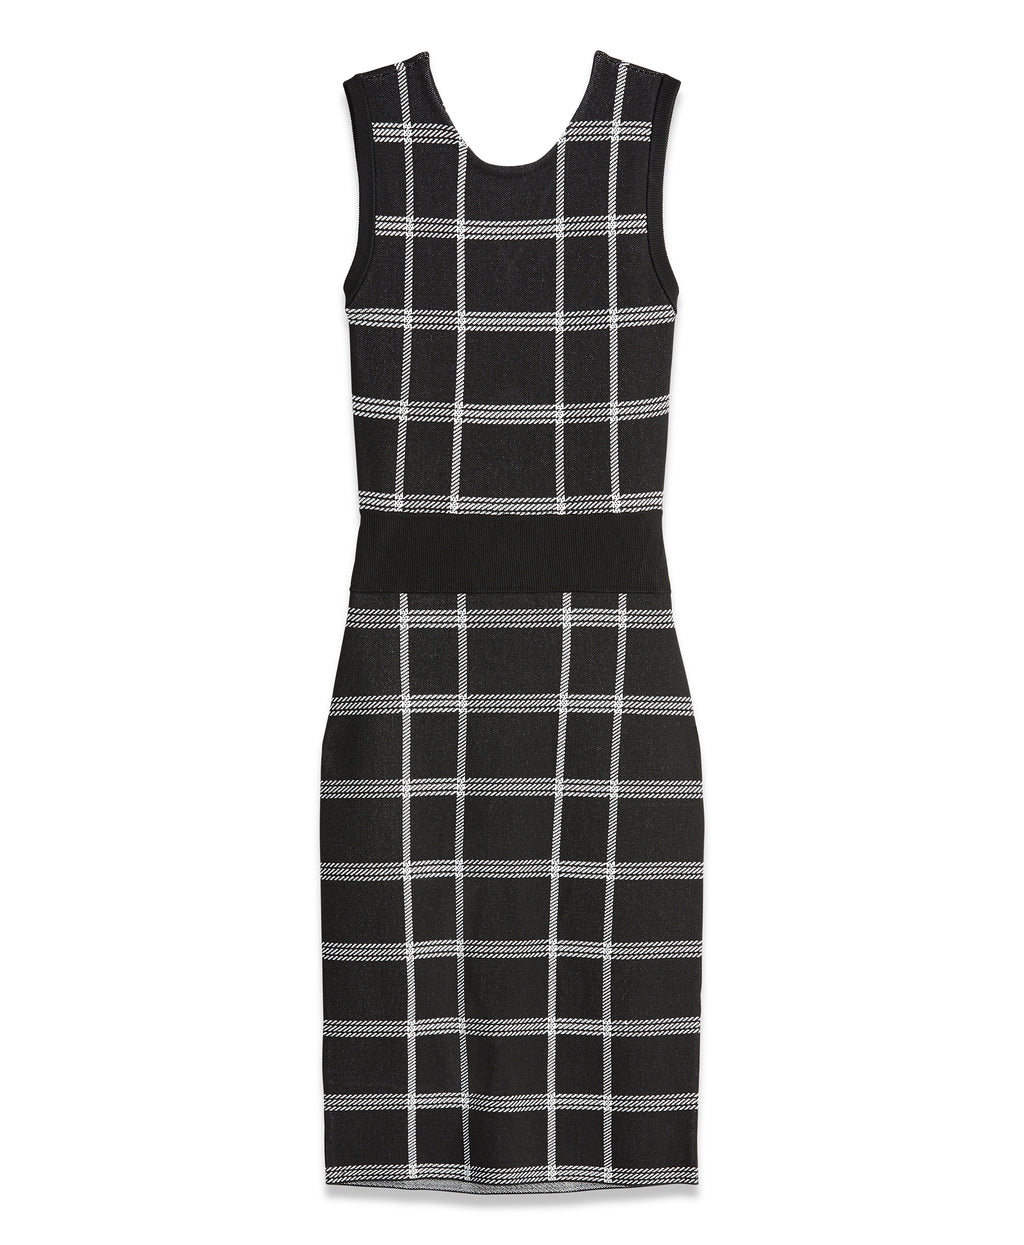 Plaid Knit Dress | Plaid Knit Dress